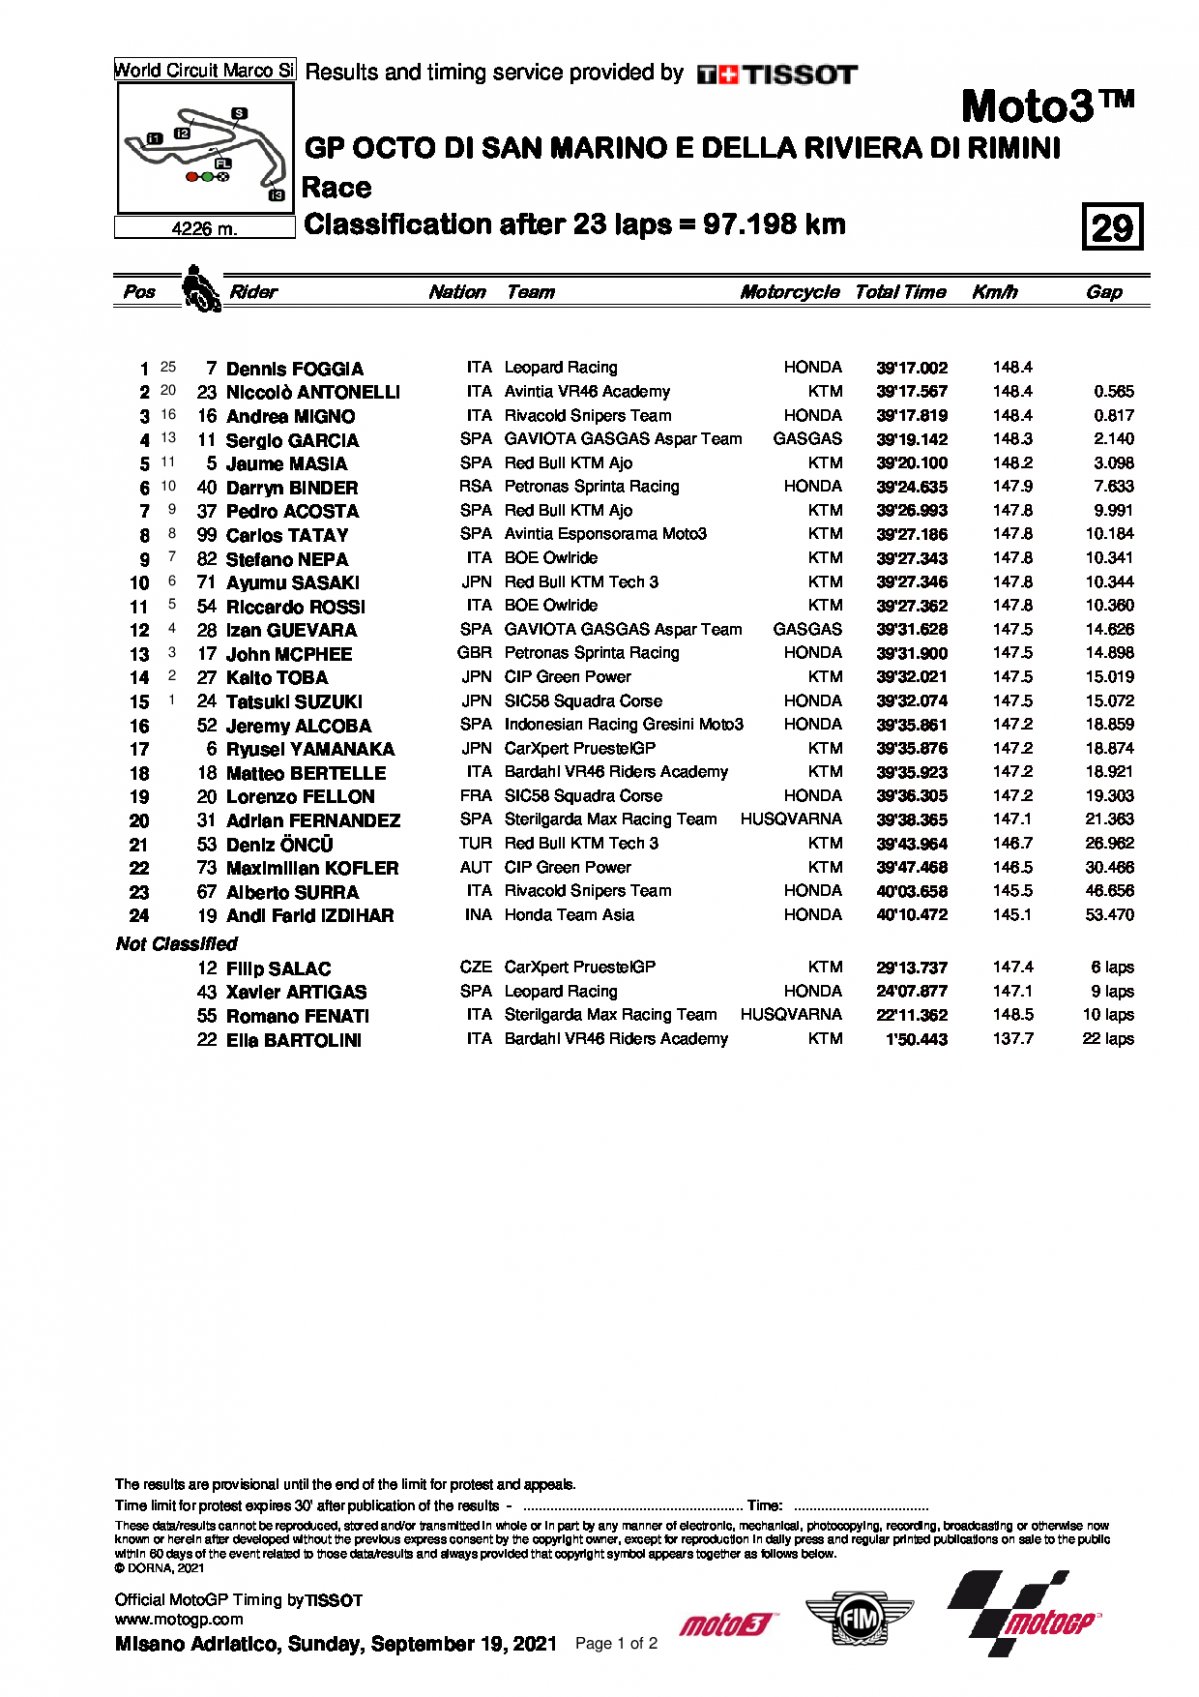 Результаты Гран-При Сан-Марино, Moto3 (19.09.2021)